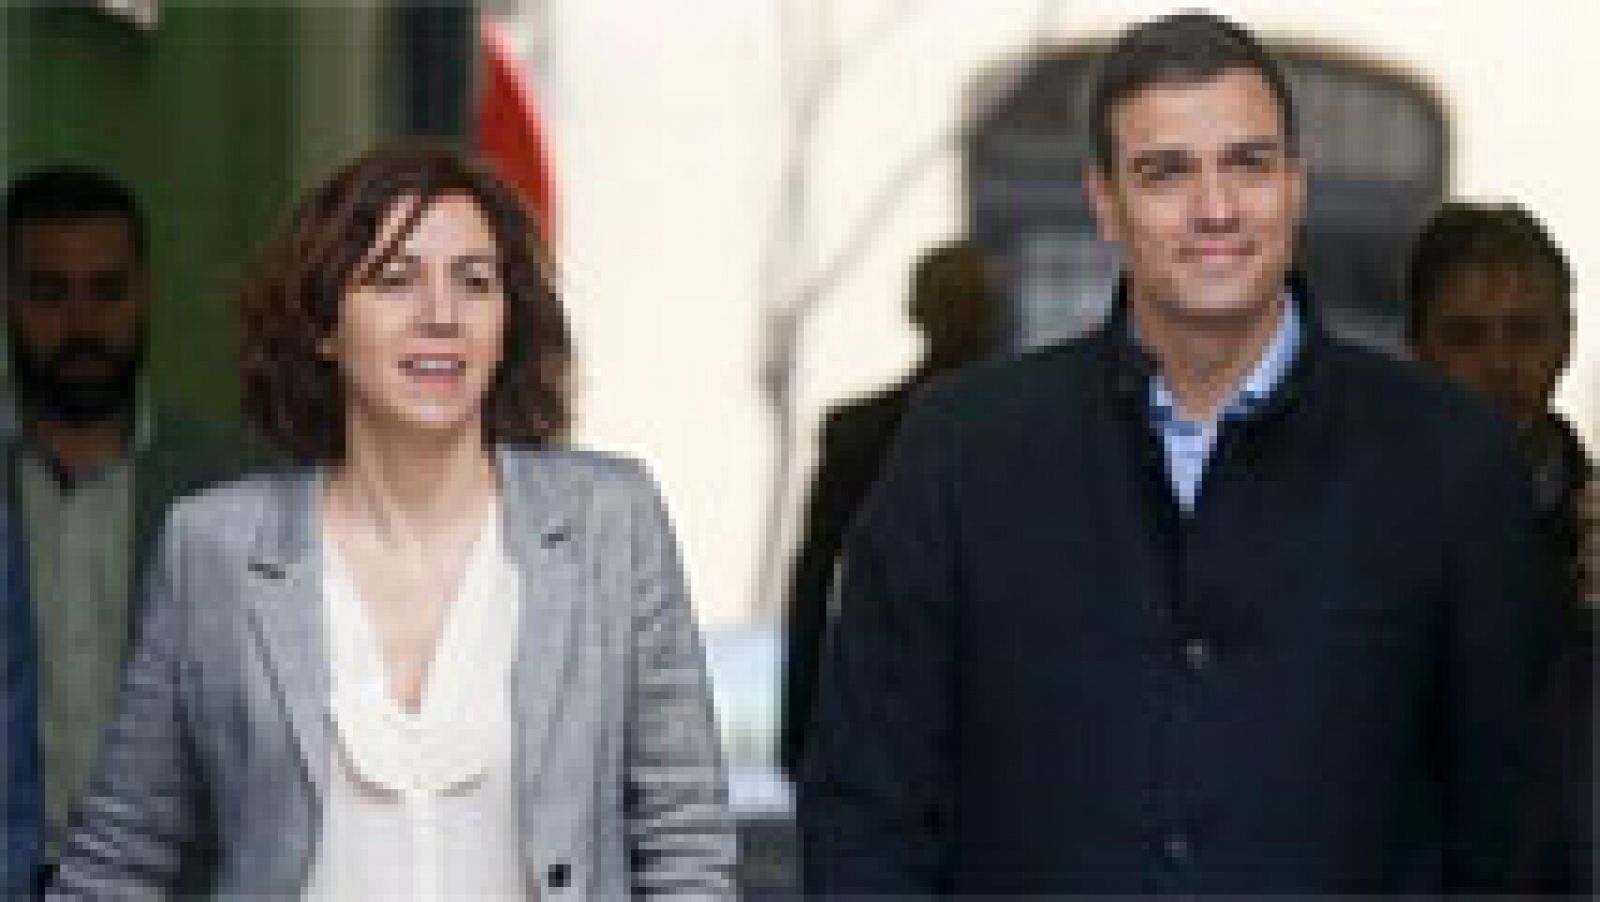 Las diputadas Irene Lozano y Carme Chacón anuncian que no repetirán en las listas del PSOE el 26J